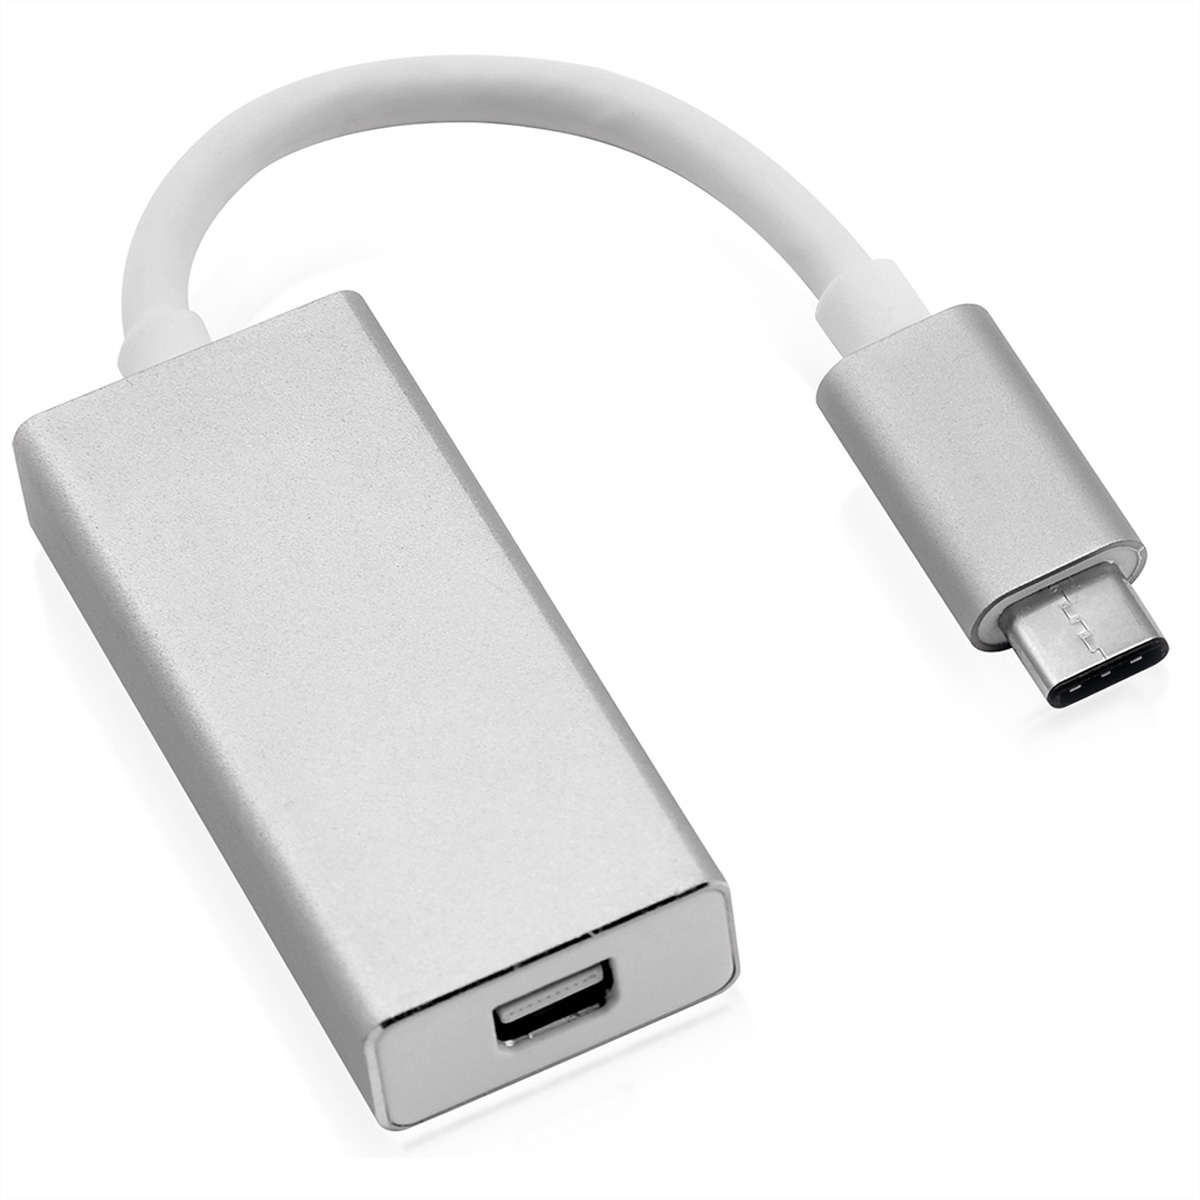 silberfarben USB-DisplayPort Mini-DisplayPort USB v1.2, C ROLINE Display ST/BU Adapter Adapter, Typ -